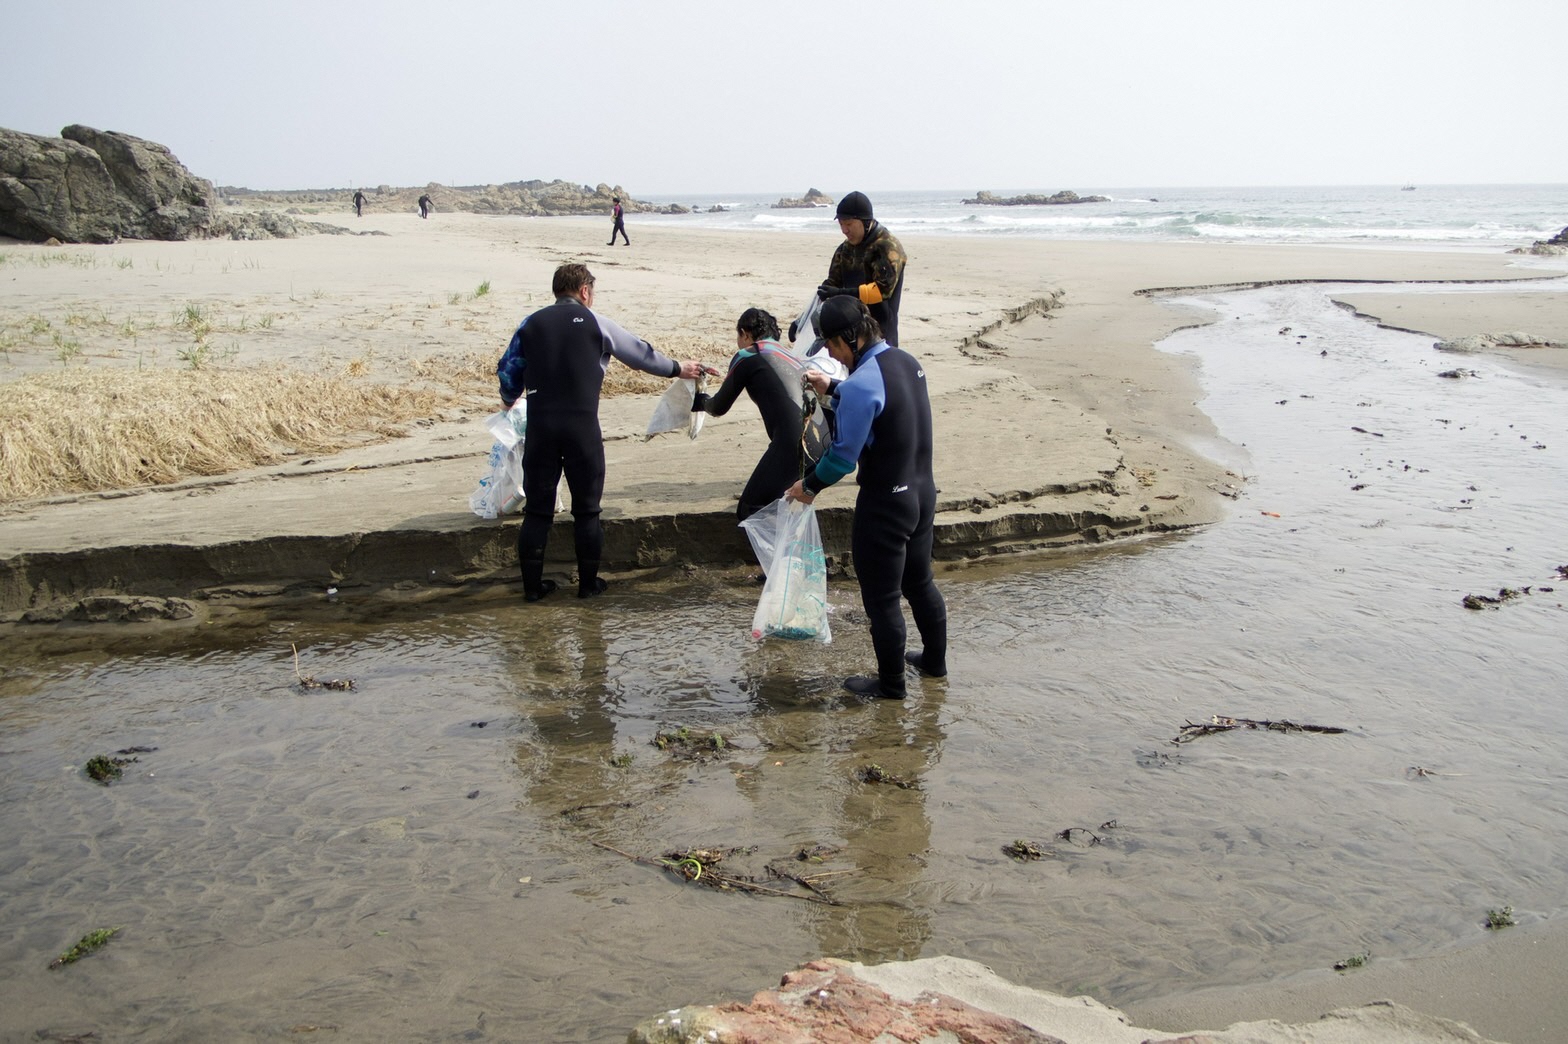 砂浜の海水がたまっている場所でウェットスーツで活動する4人の写真